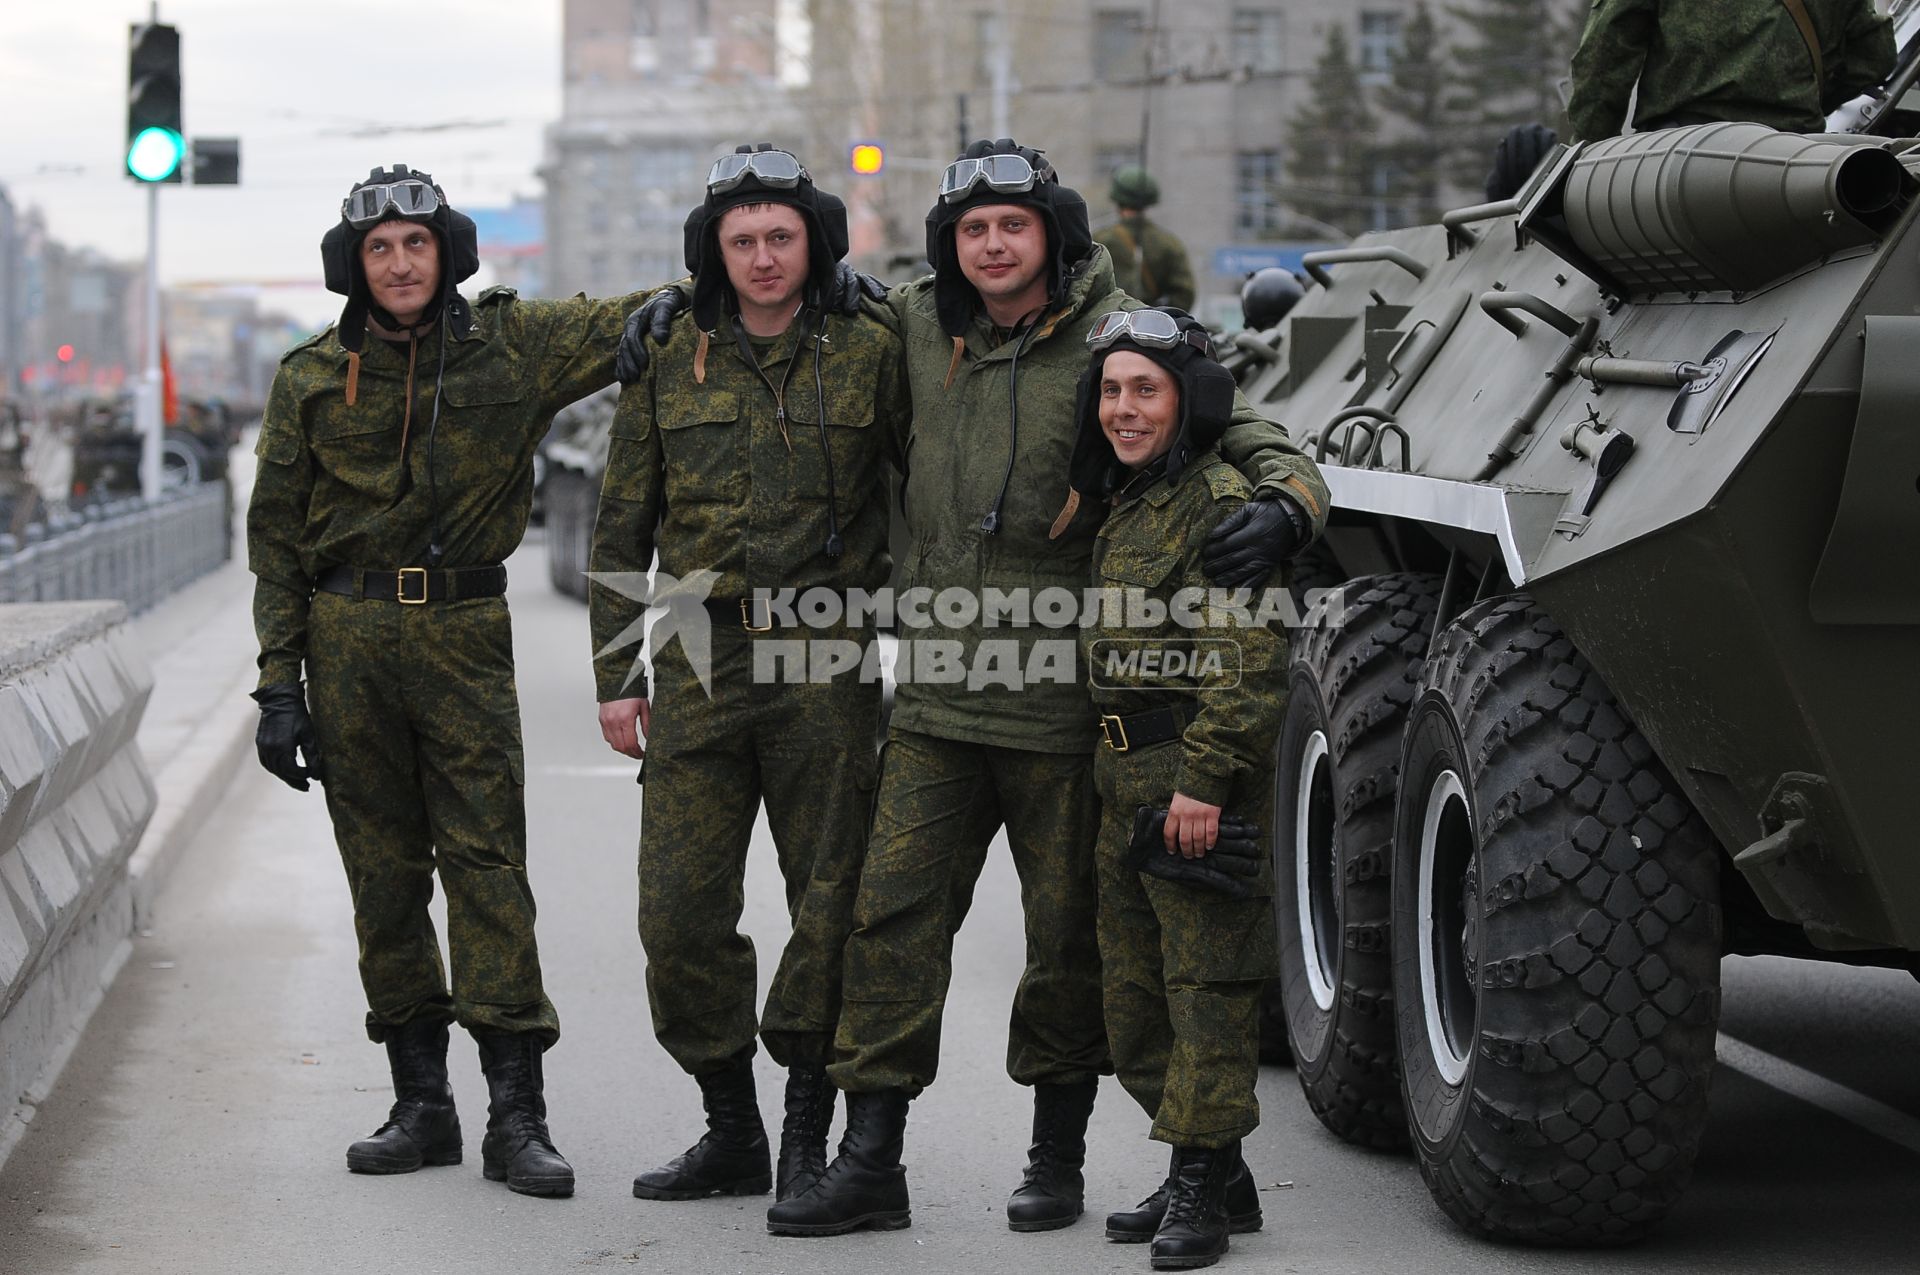 Репетиция парада в Новосибирске. На снимке: солдаты позируют на фоне военной техники.